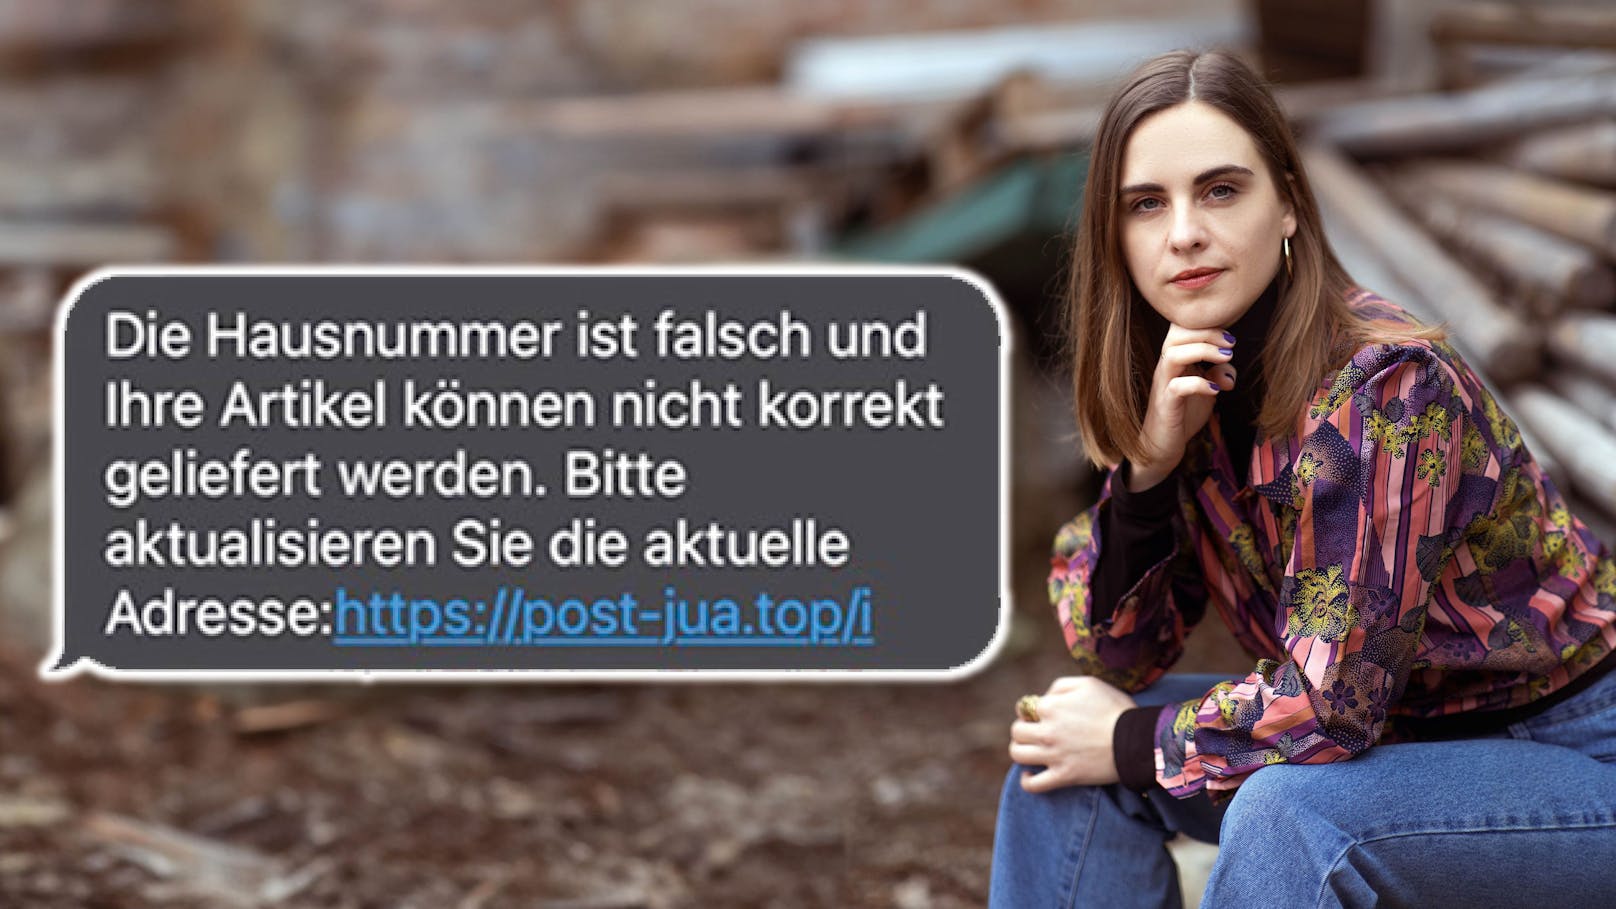 SMS von Betrügern: Wiener Autorin verliert 1.300 Euro